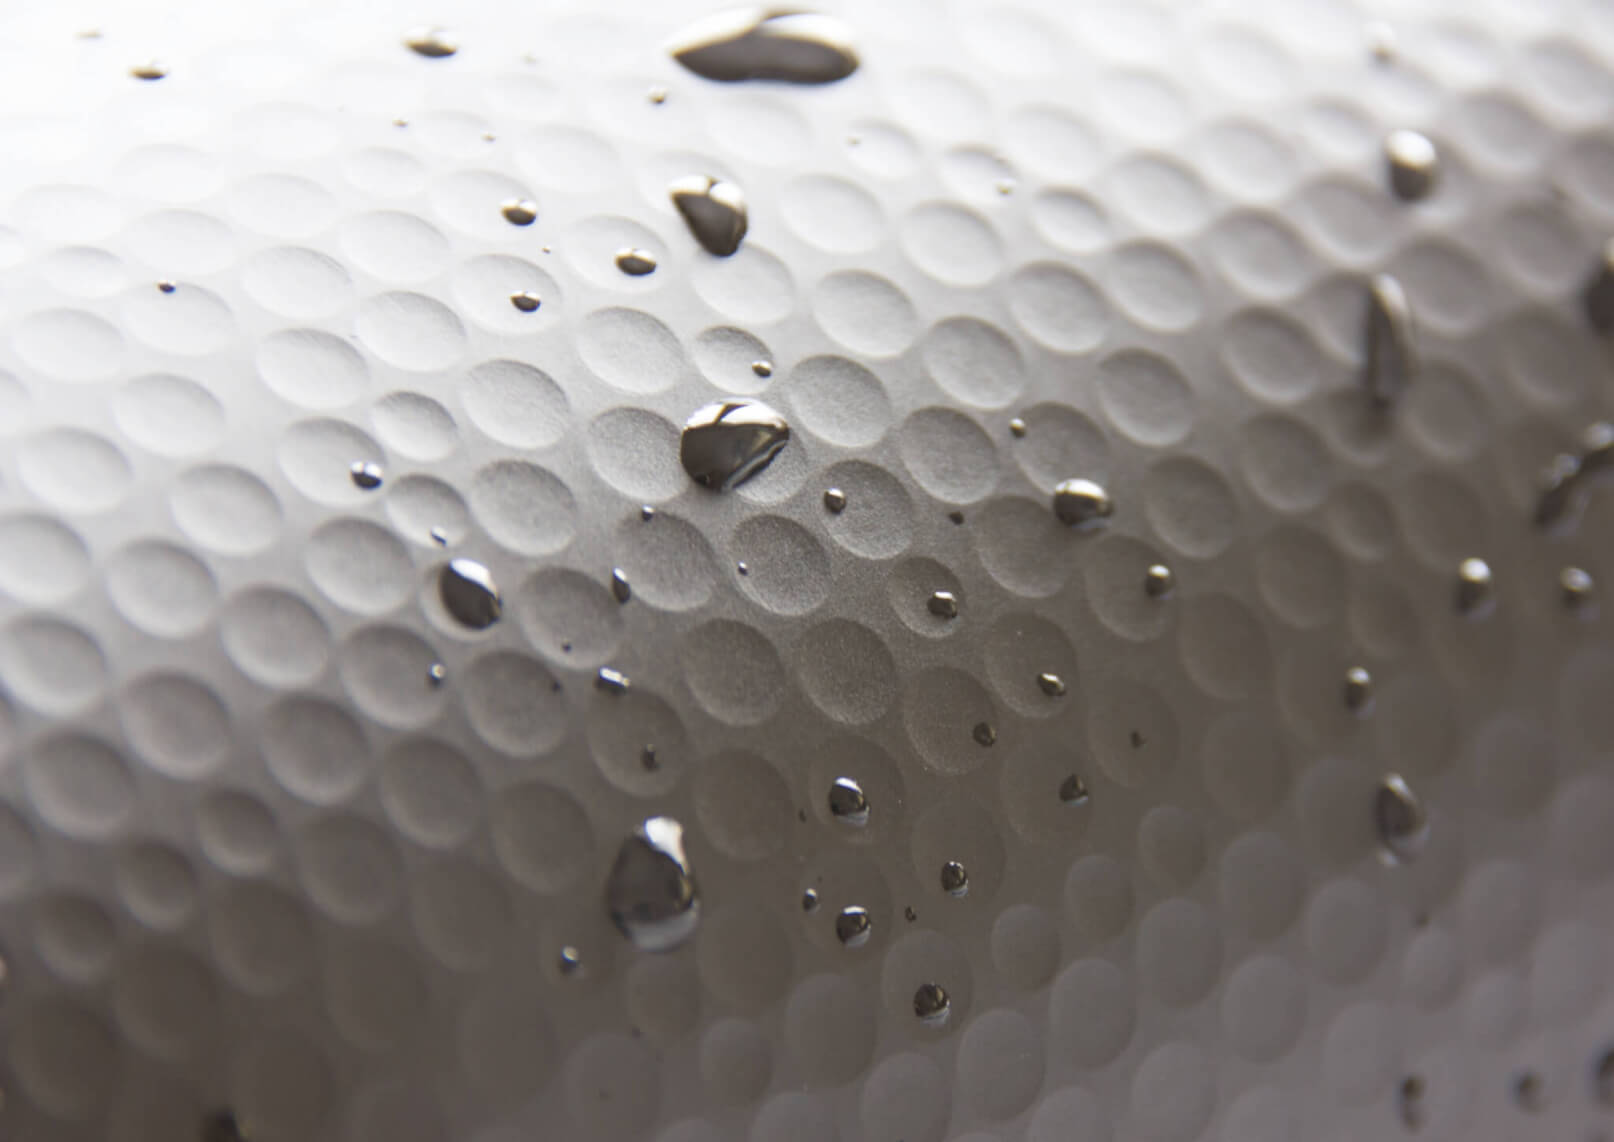 Imagen detallada de la estructura de la superficie impermeable del patrón de bola de golf del desarrollo de ZDRAX